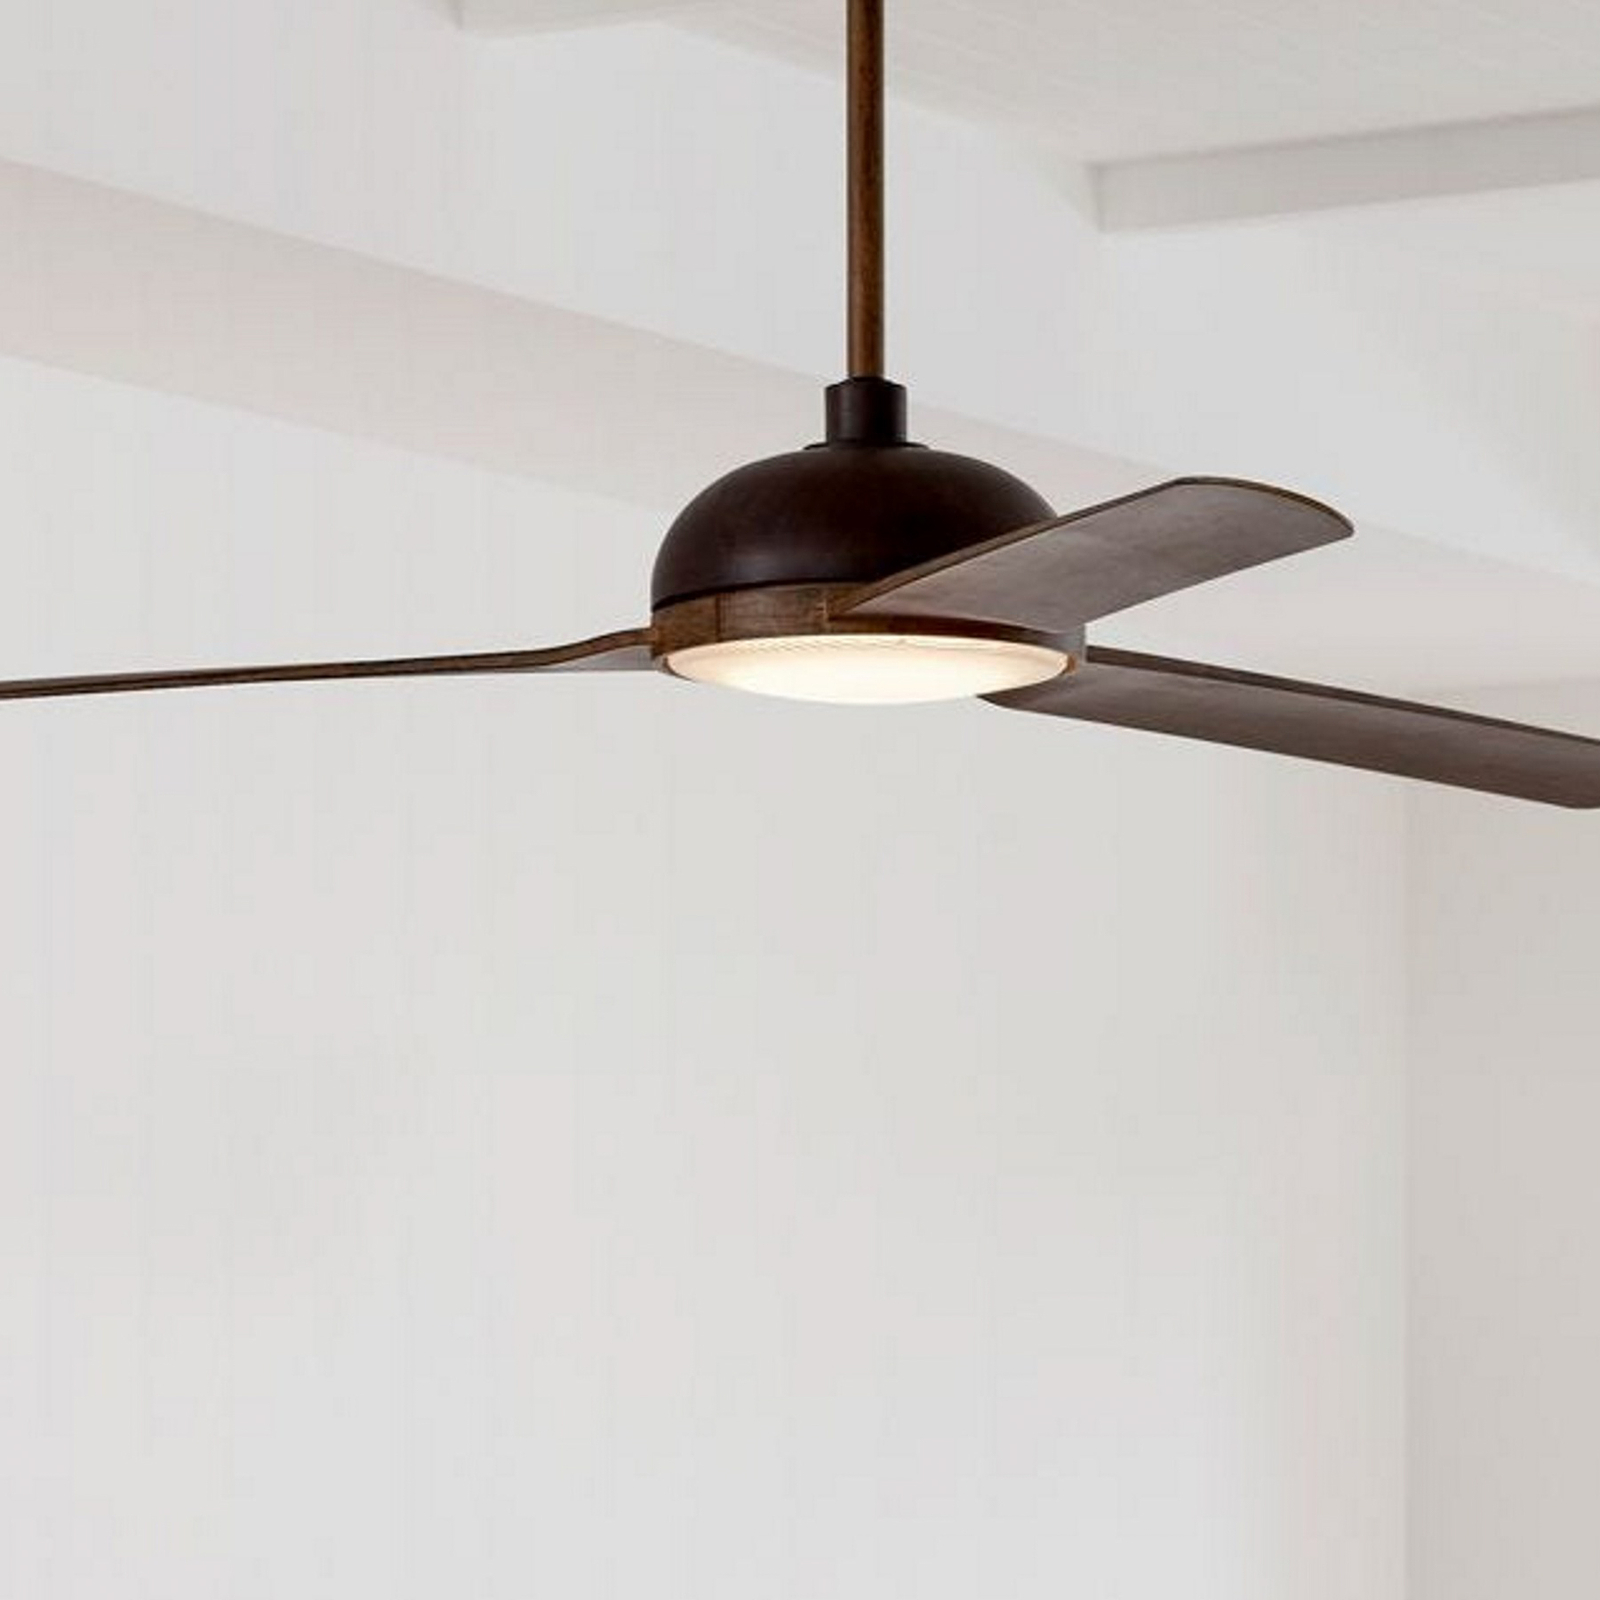 Beacon Ventilateur de plafond avec lumière Unione, bronze/koa, silencieux